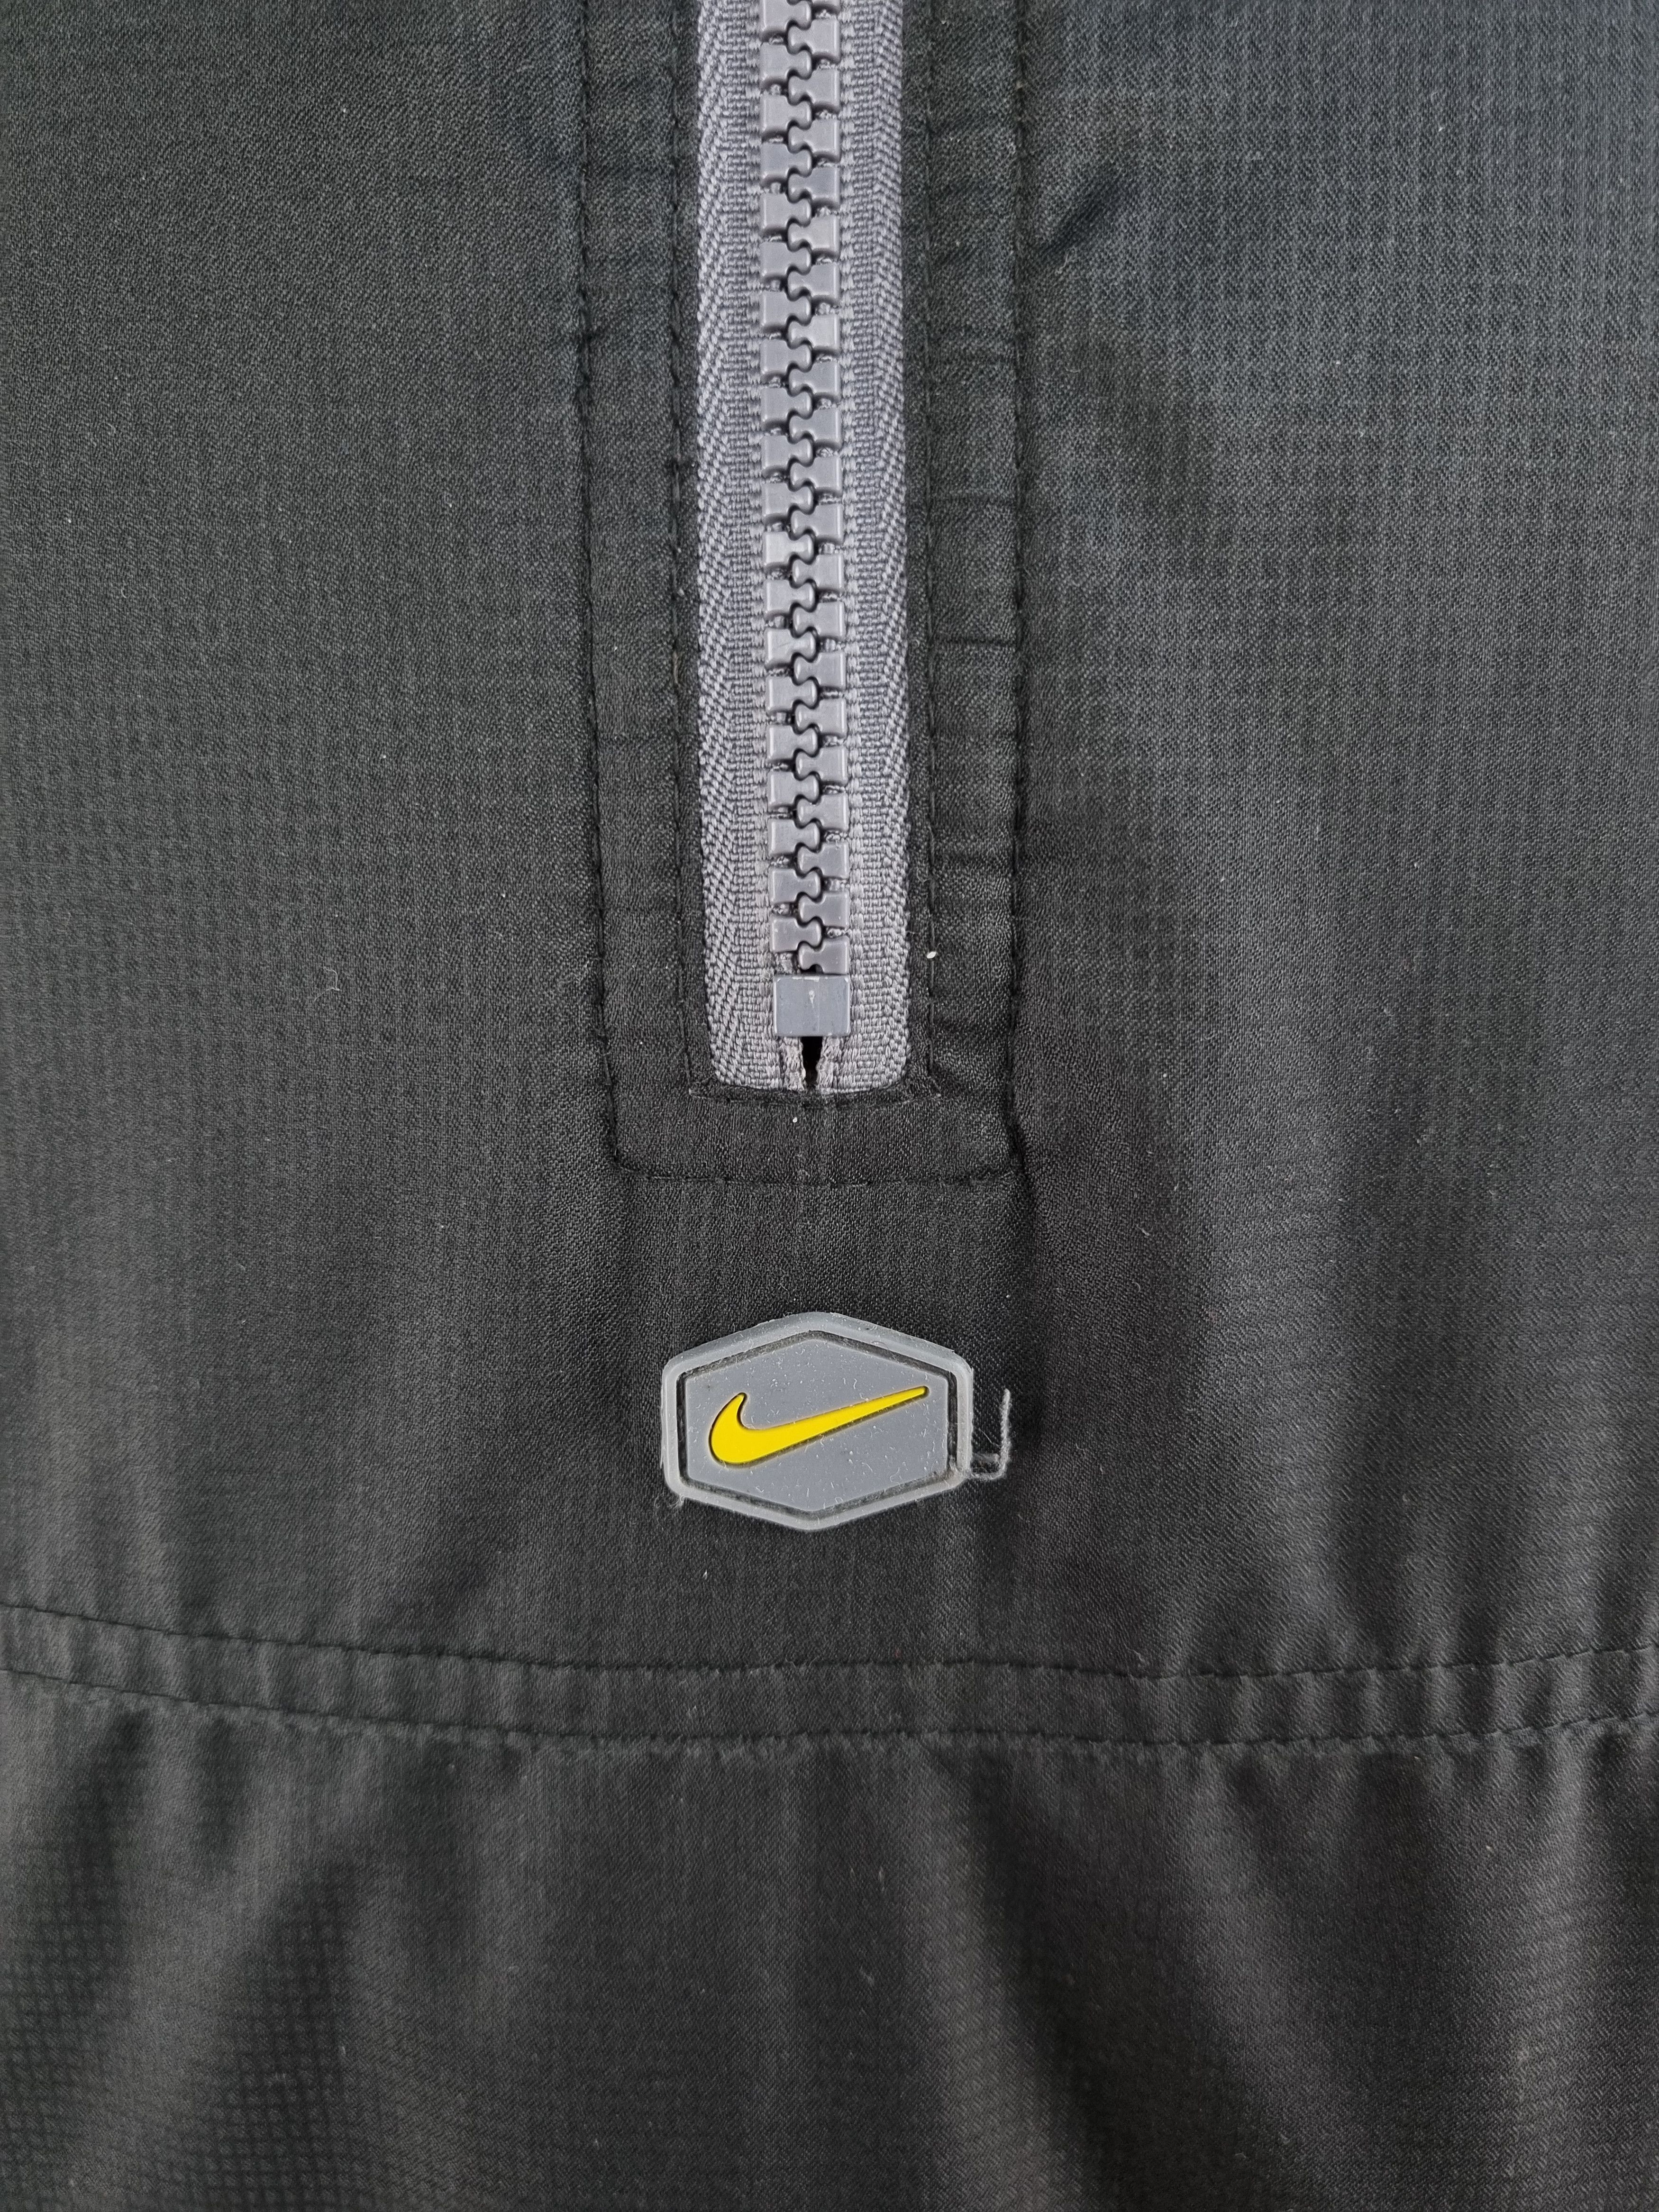 Nike NIKE 2 in 1 Ninja Balaklava Vintage Anorak Jacket Size US M / EU 48-50 / 2 - 13 Thumbnail